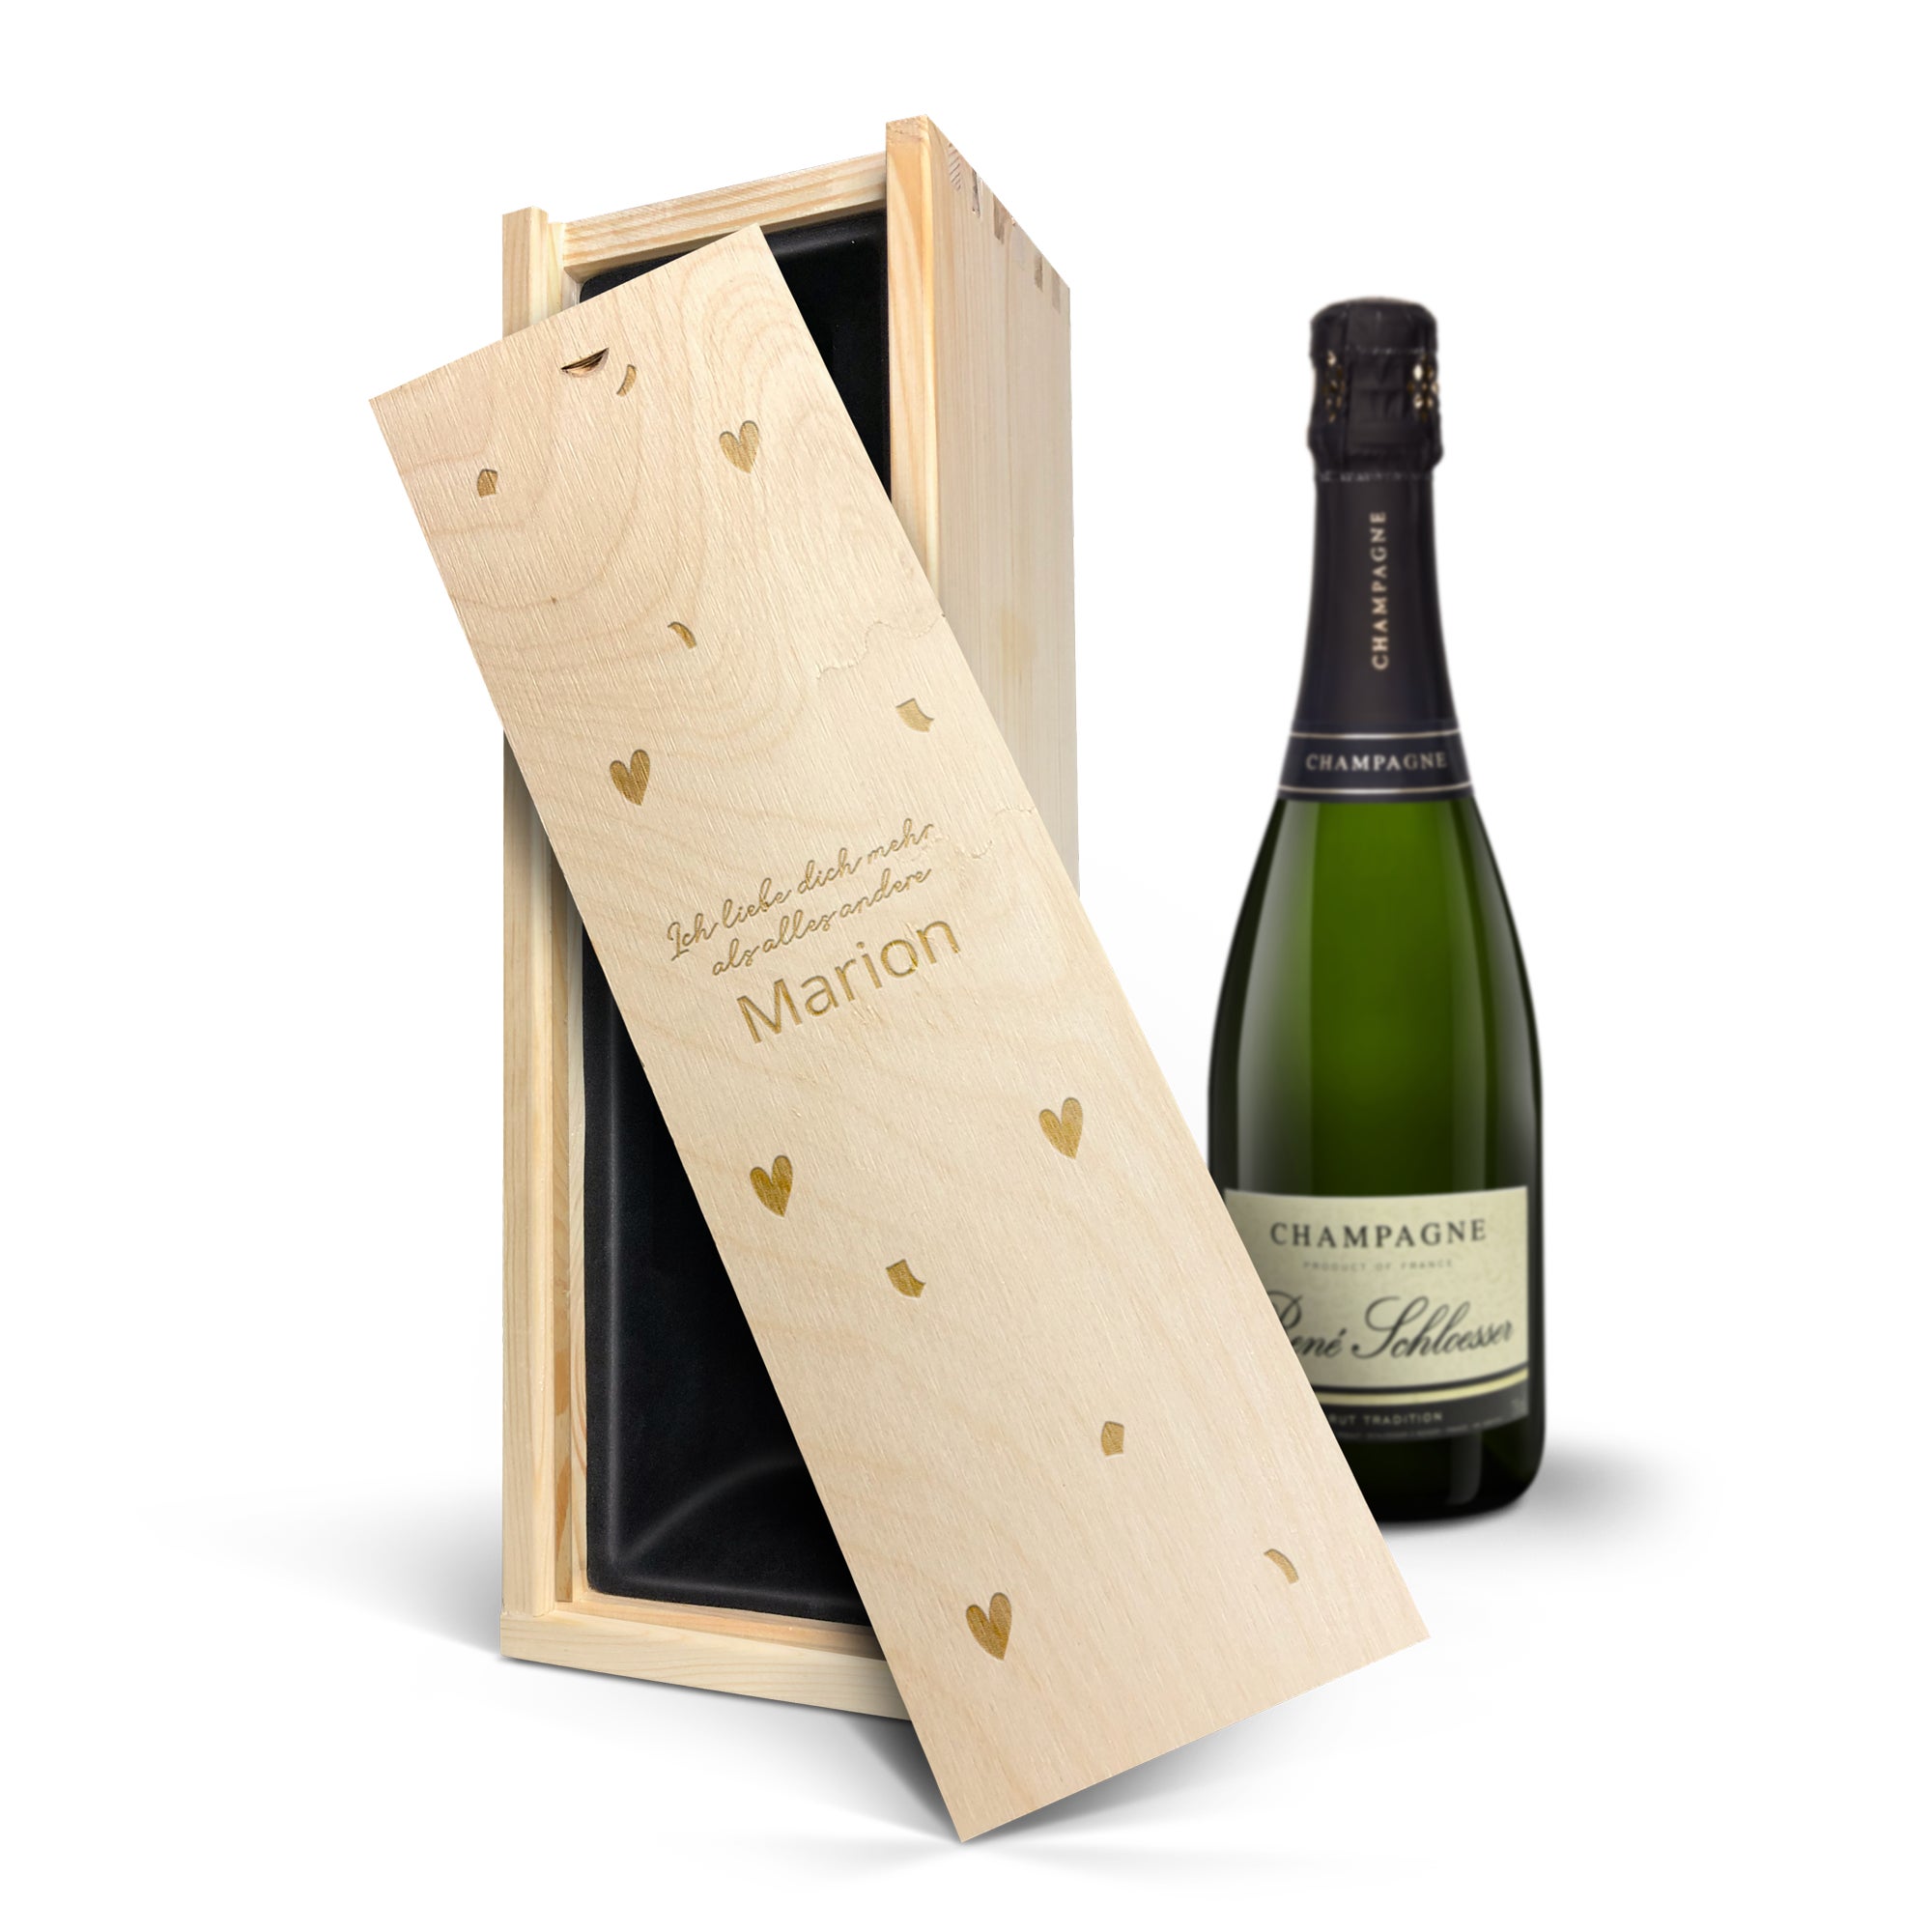 Champagner personalisieren gravierte Kiste Rene Schloesser (750 ml)  - Onlineshop YourSurprise